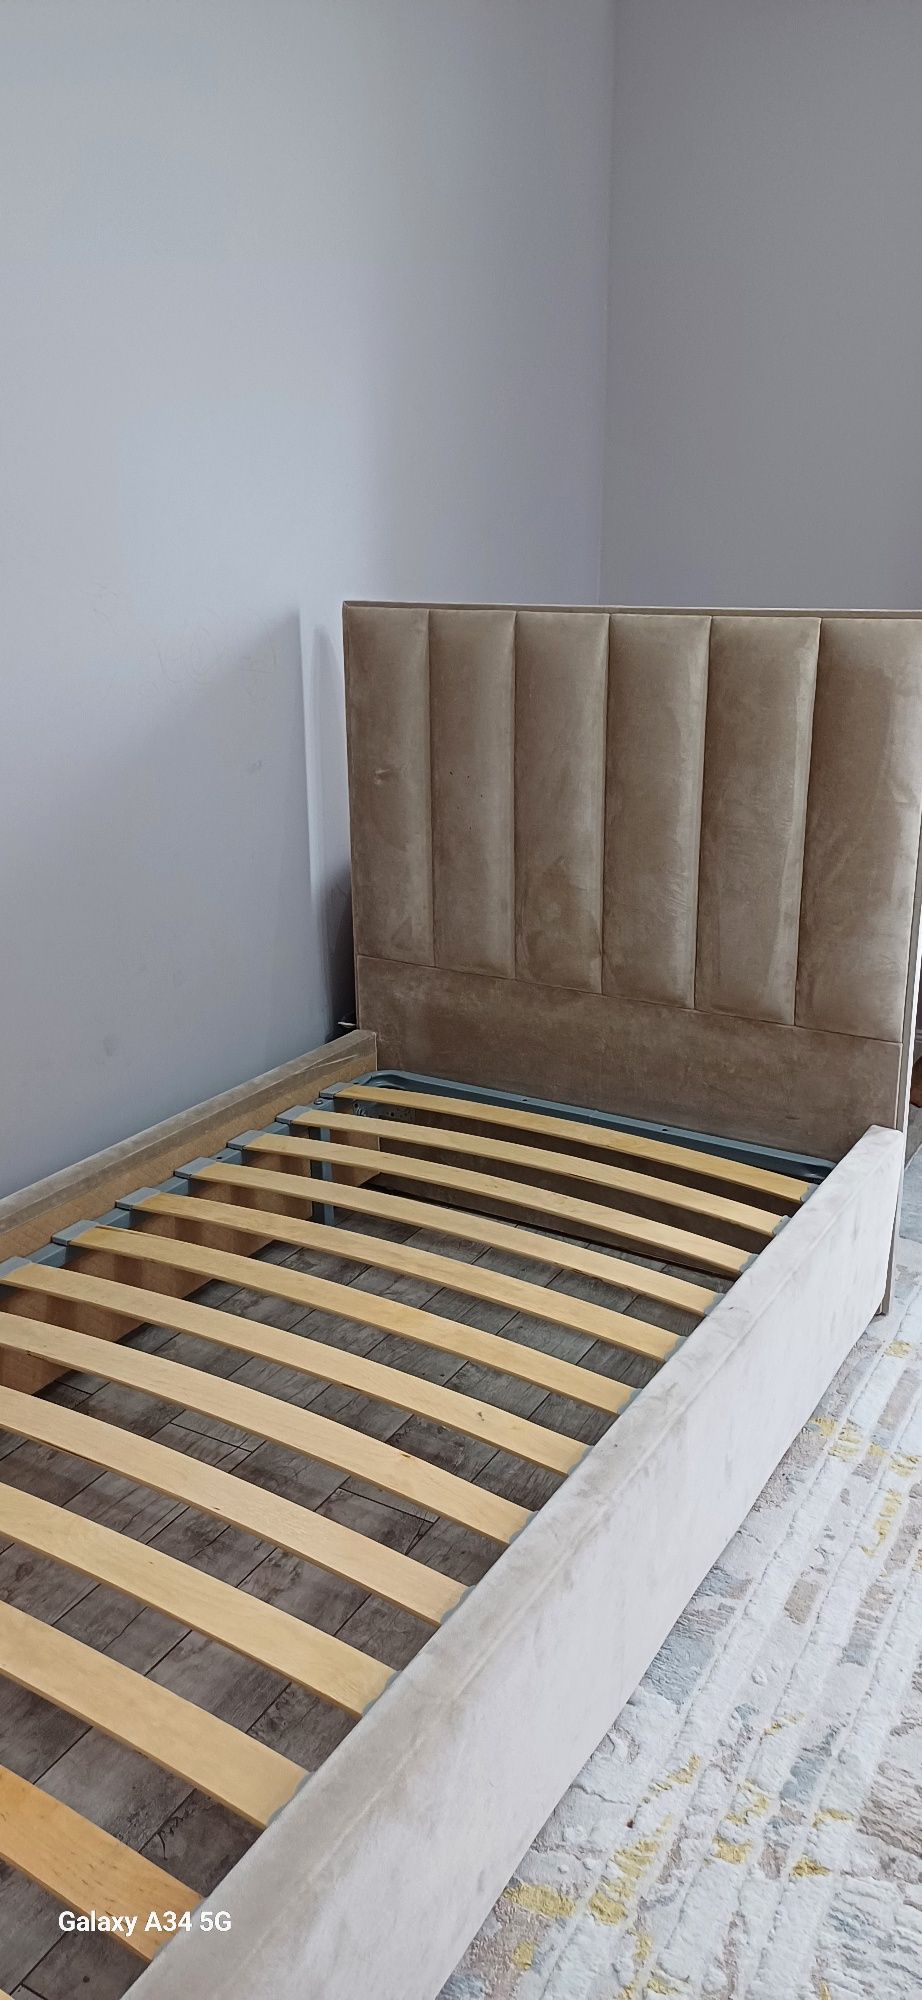 Кровать 190×120 в отличном сост